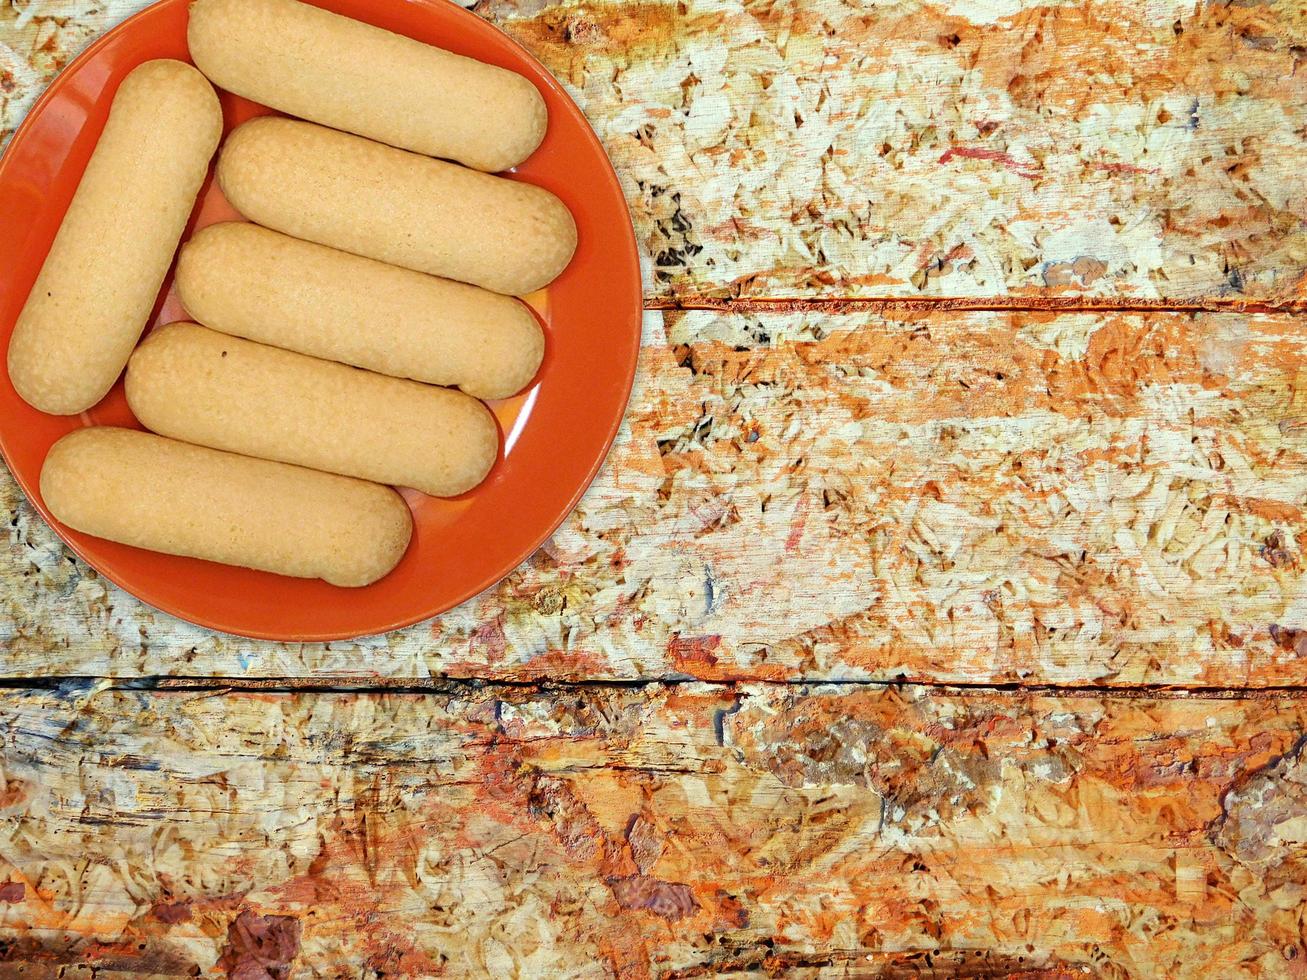 Kekse auf einem roten Teller auf einem hölzernen Tischhintergrund foto